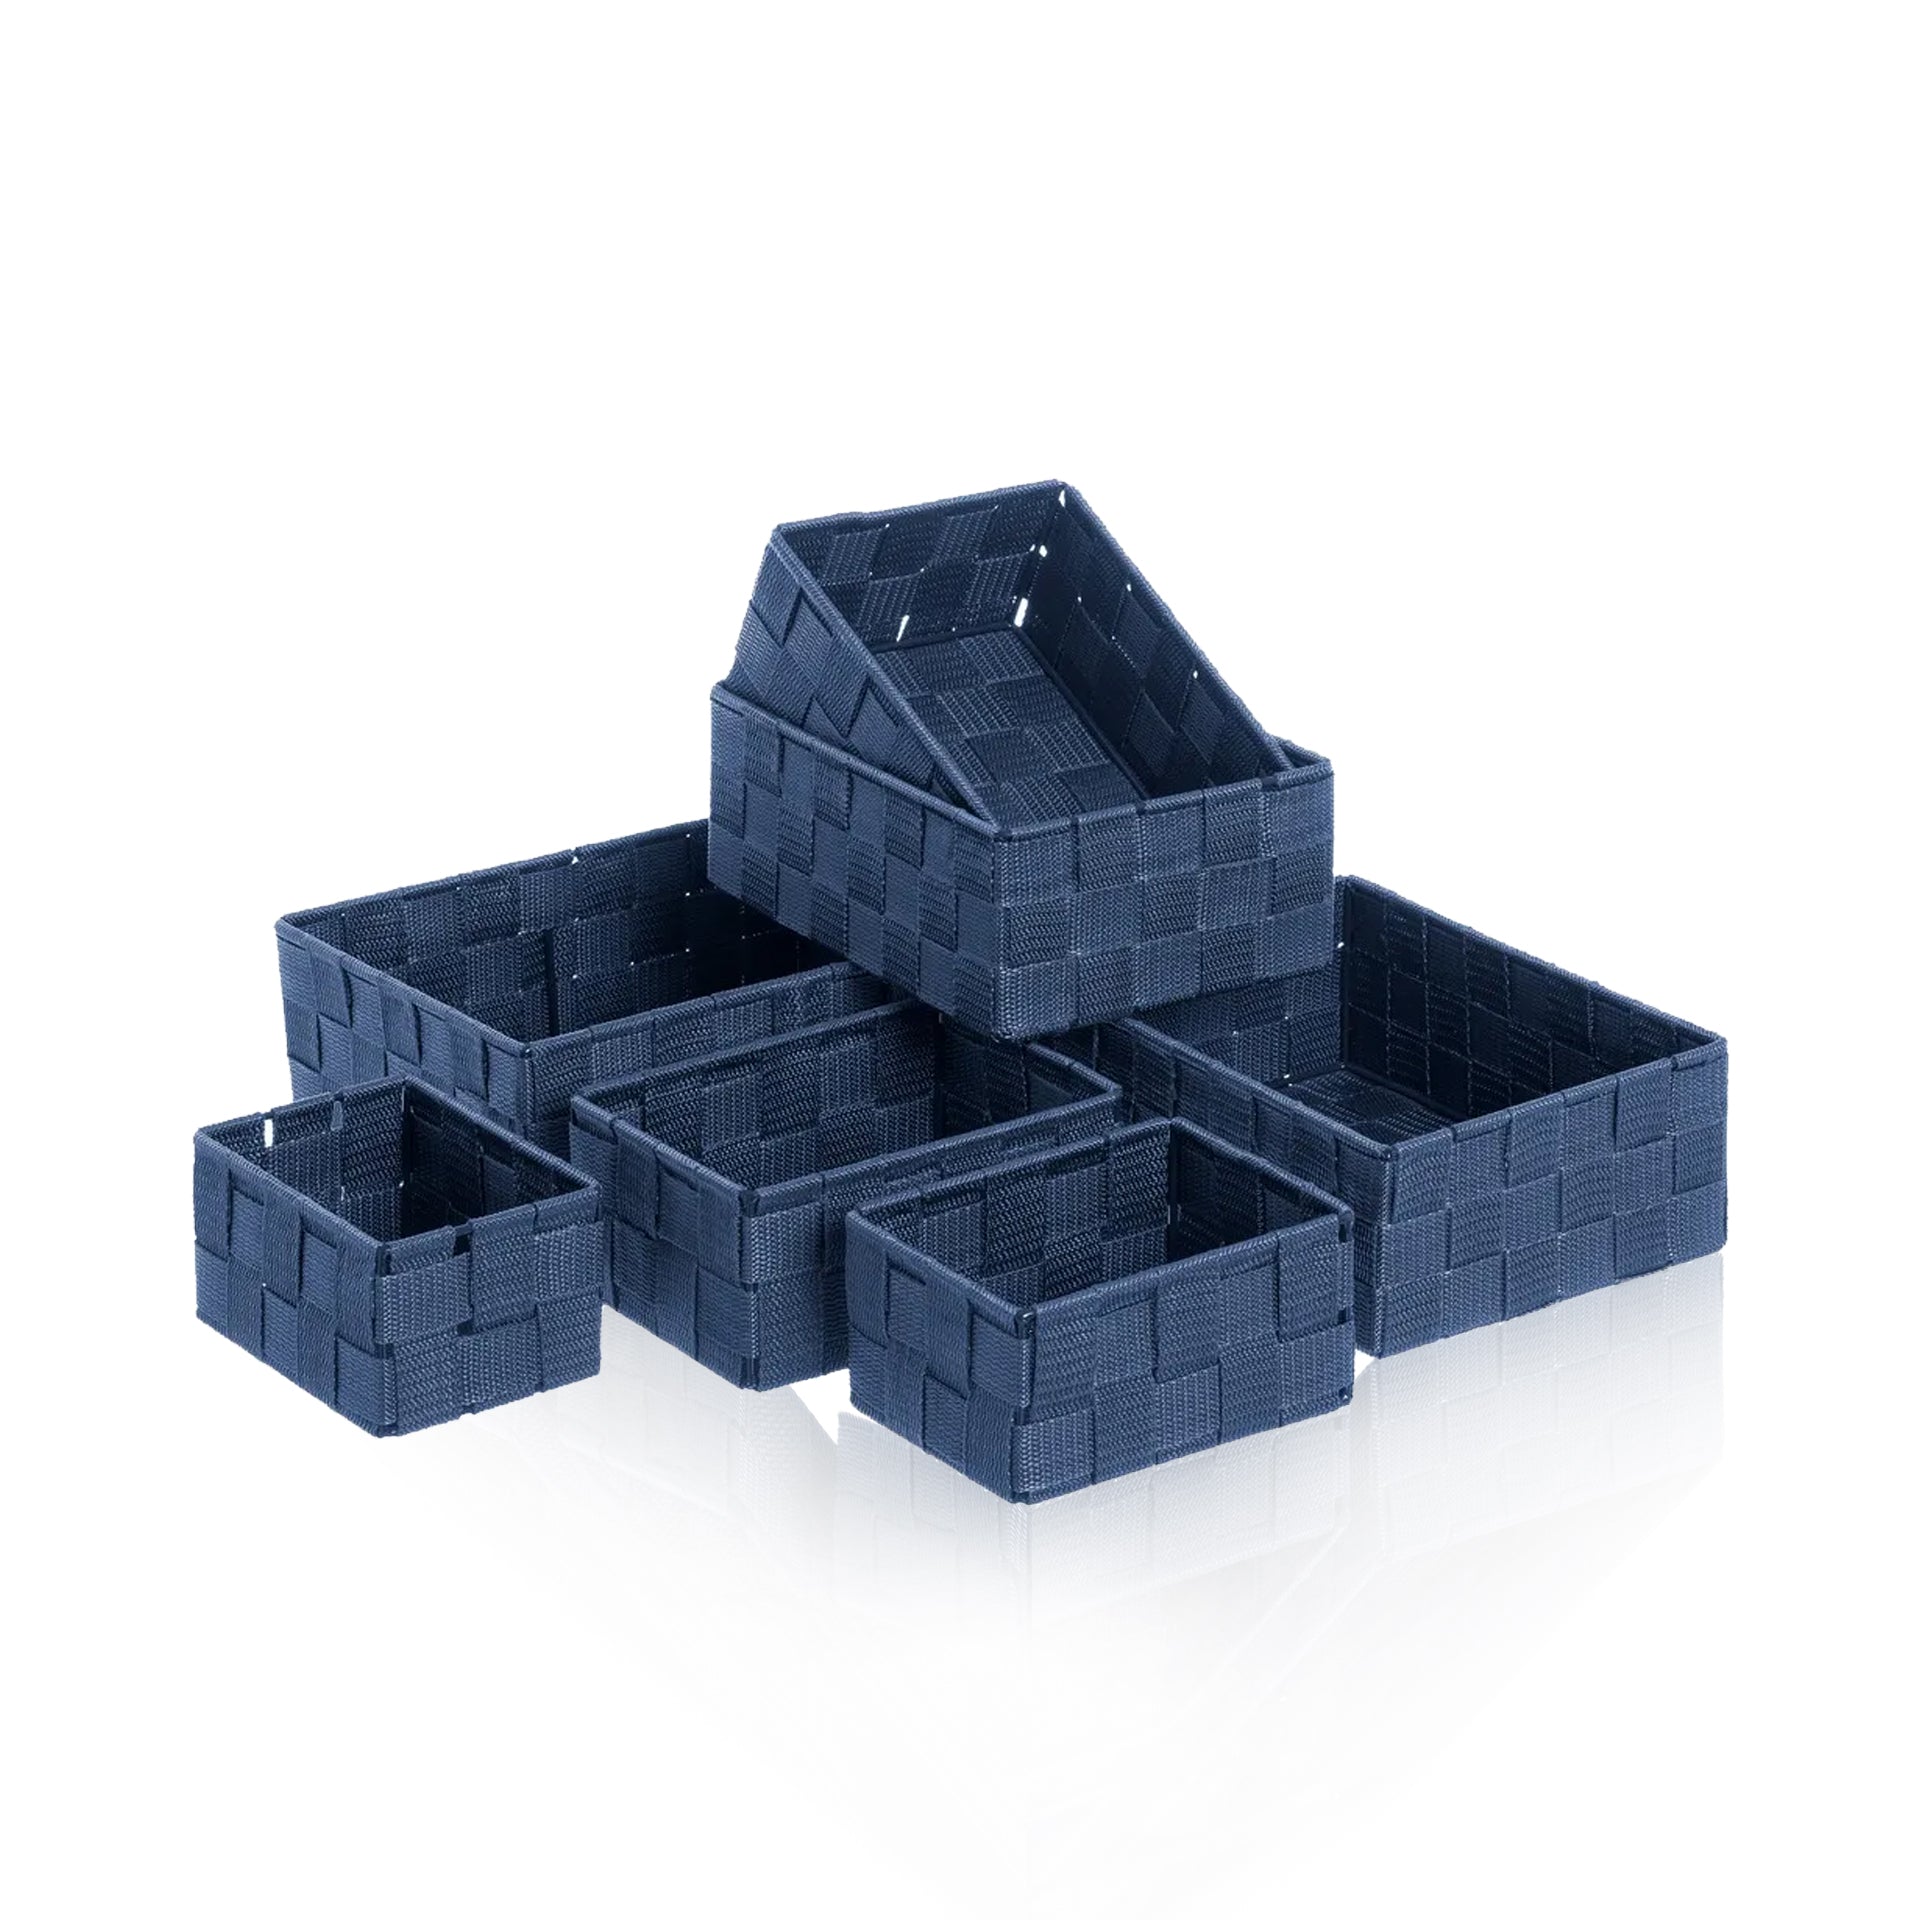 Pack de 6 Caixas de Arrumação TECTAKE (33 x 23 x 12 cm - Plástico -  Transparente)